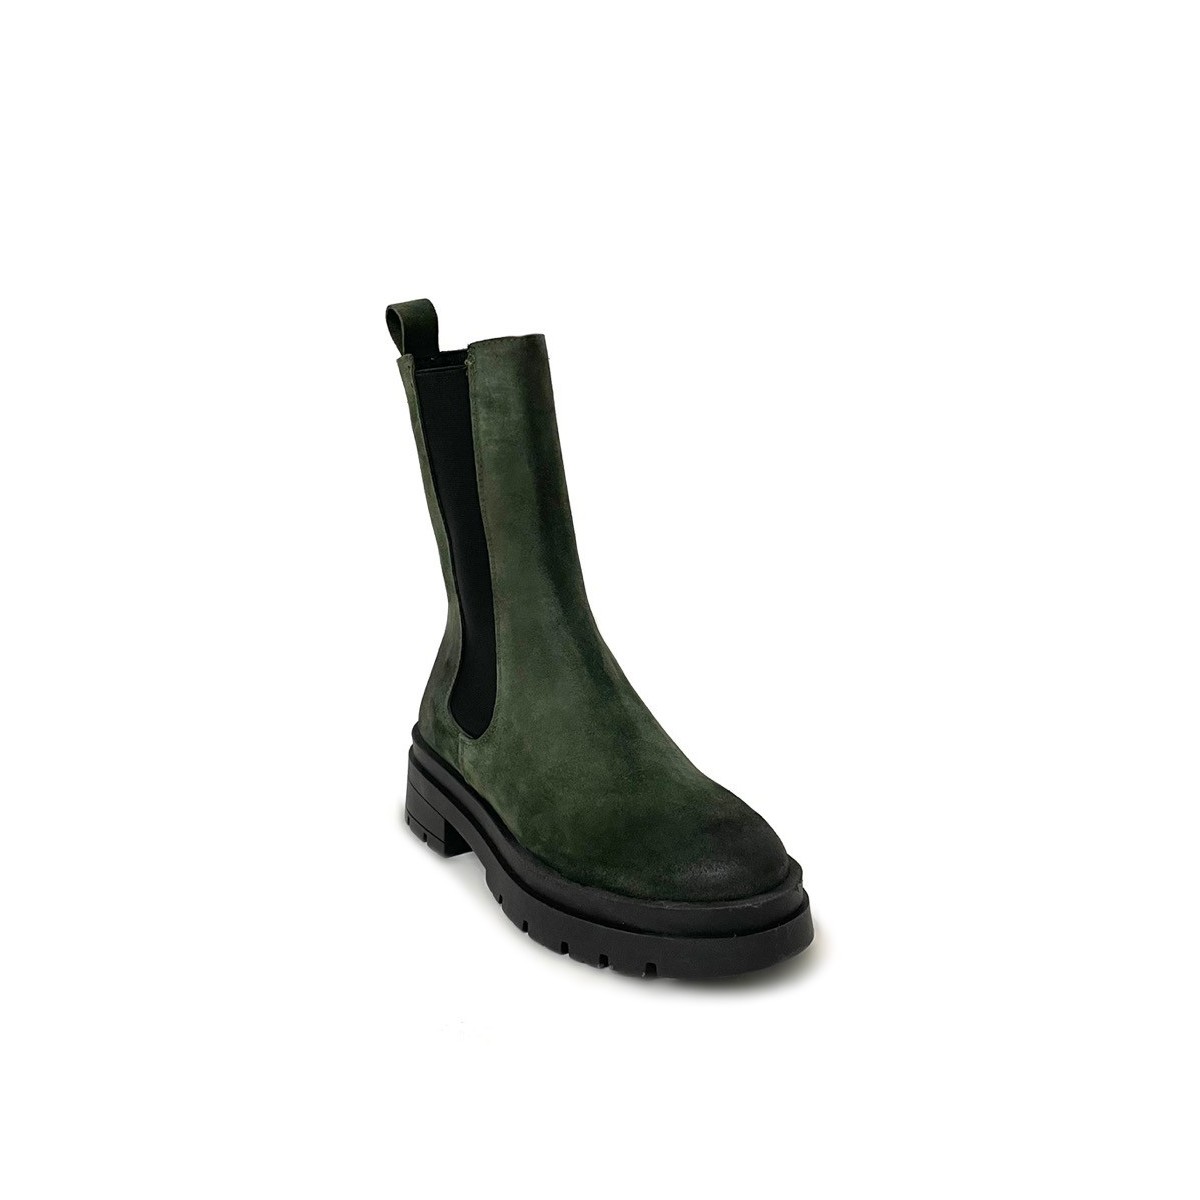 Stivaletti combat boots camoscio verde